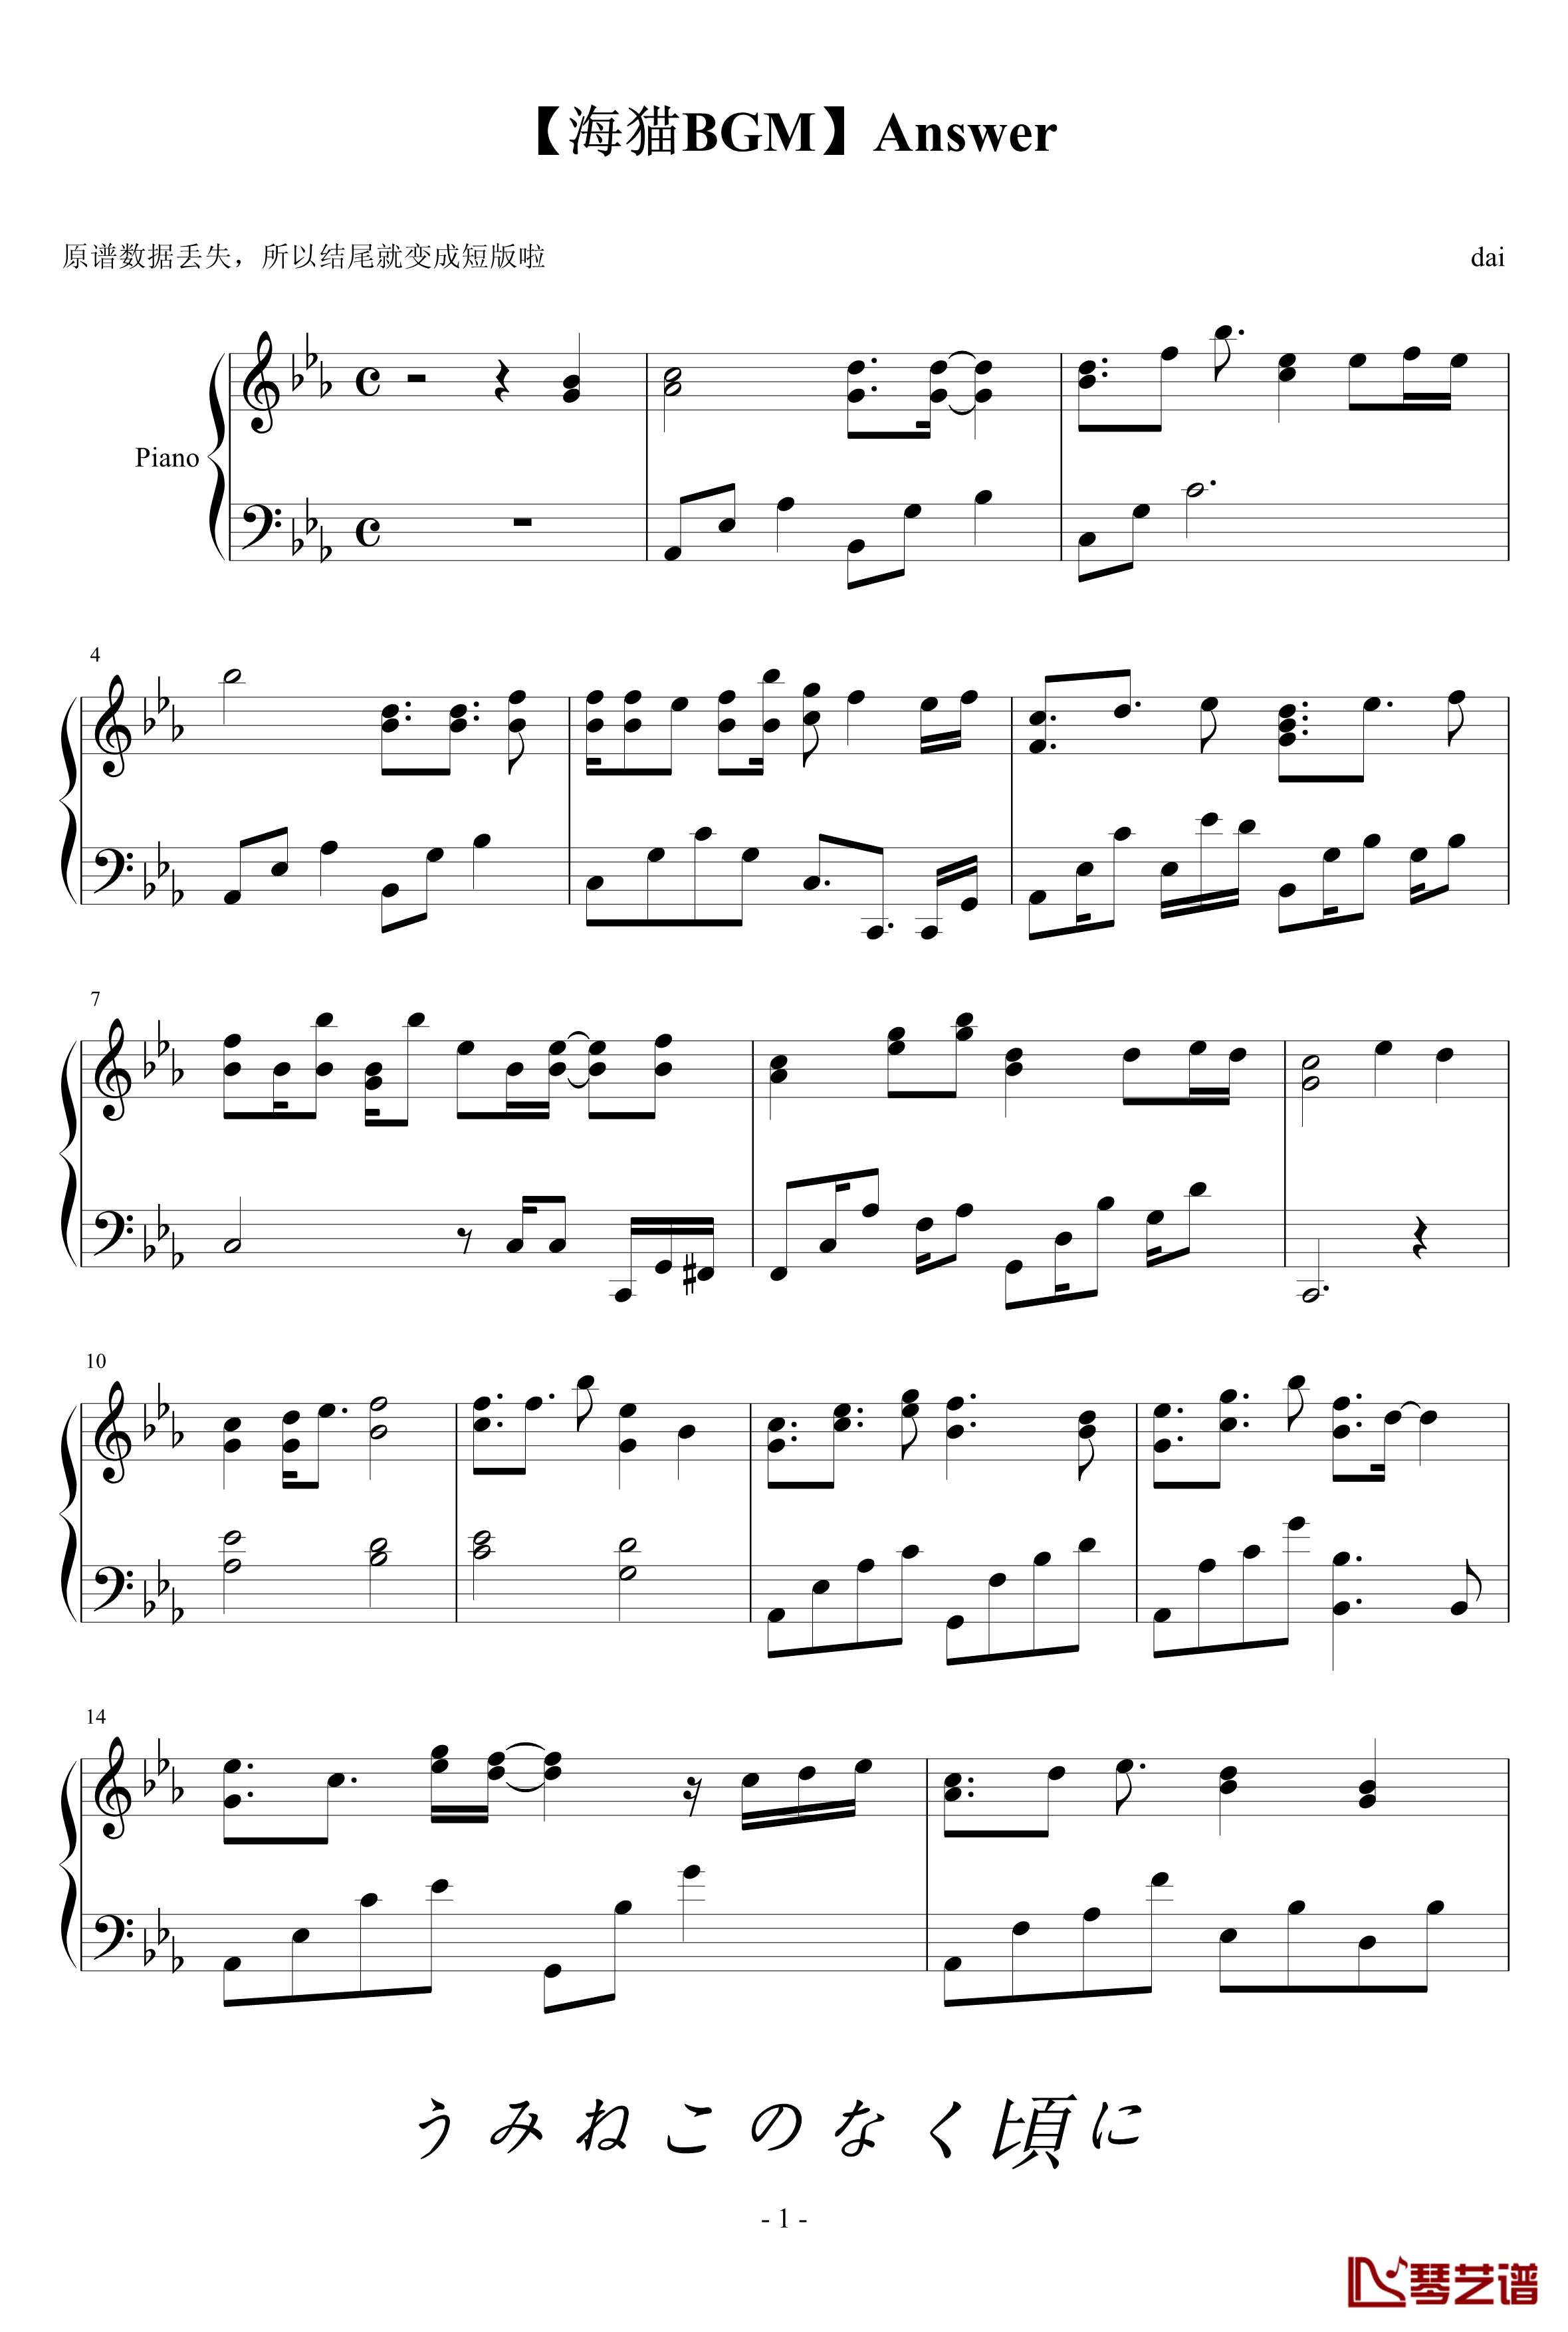 海猫BGM钢琴谱-Answer-海猫鸣泣之时1